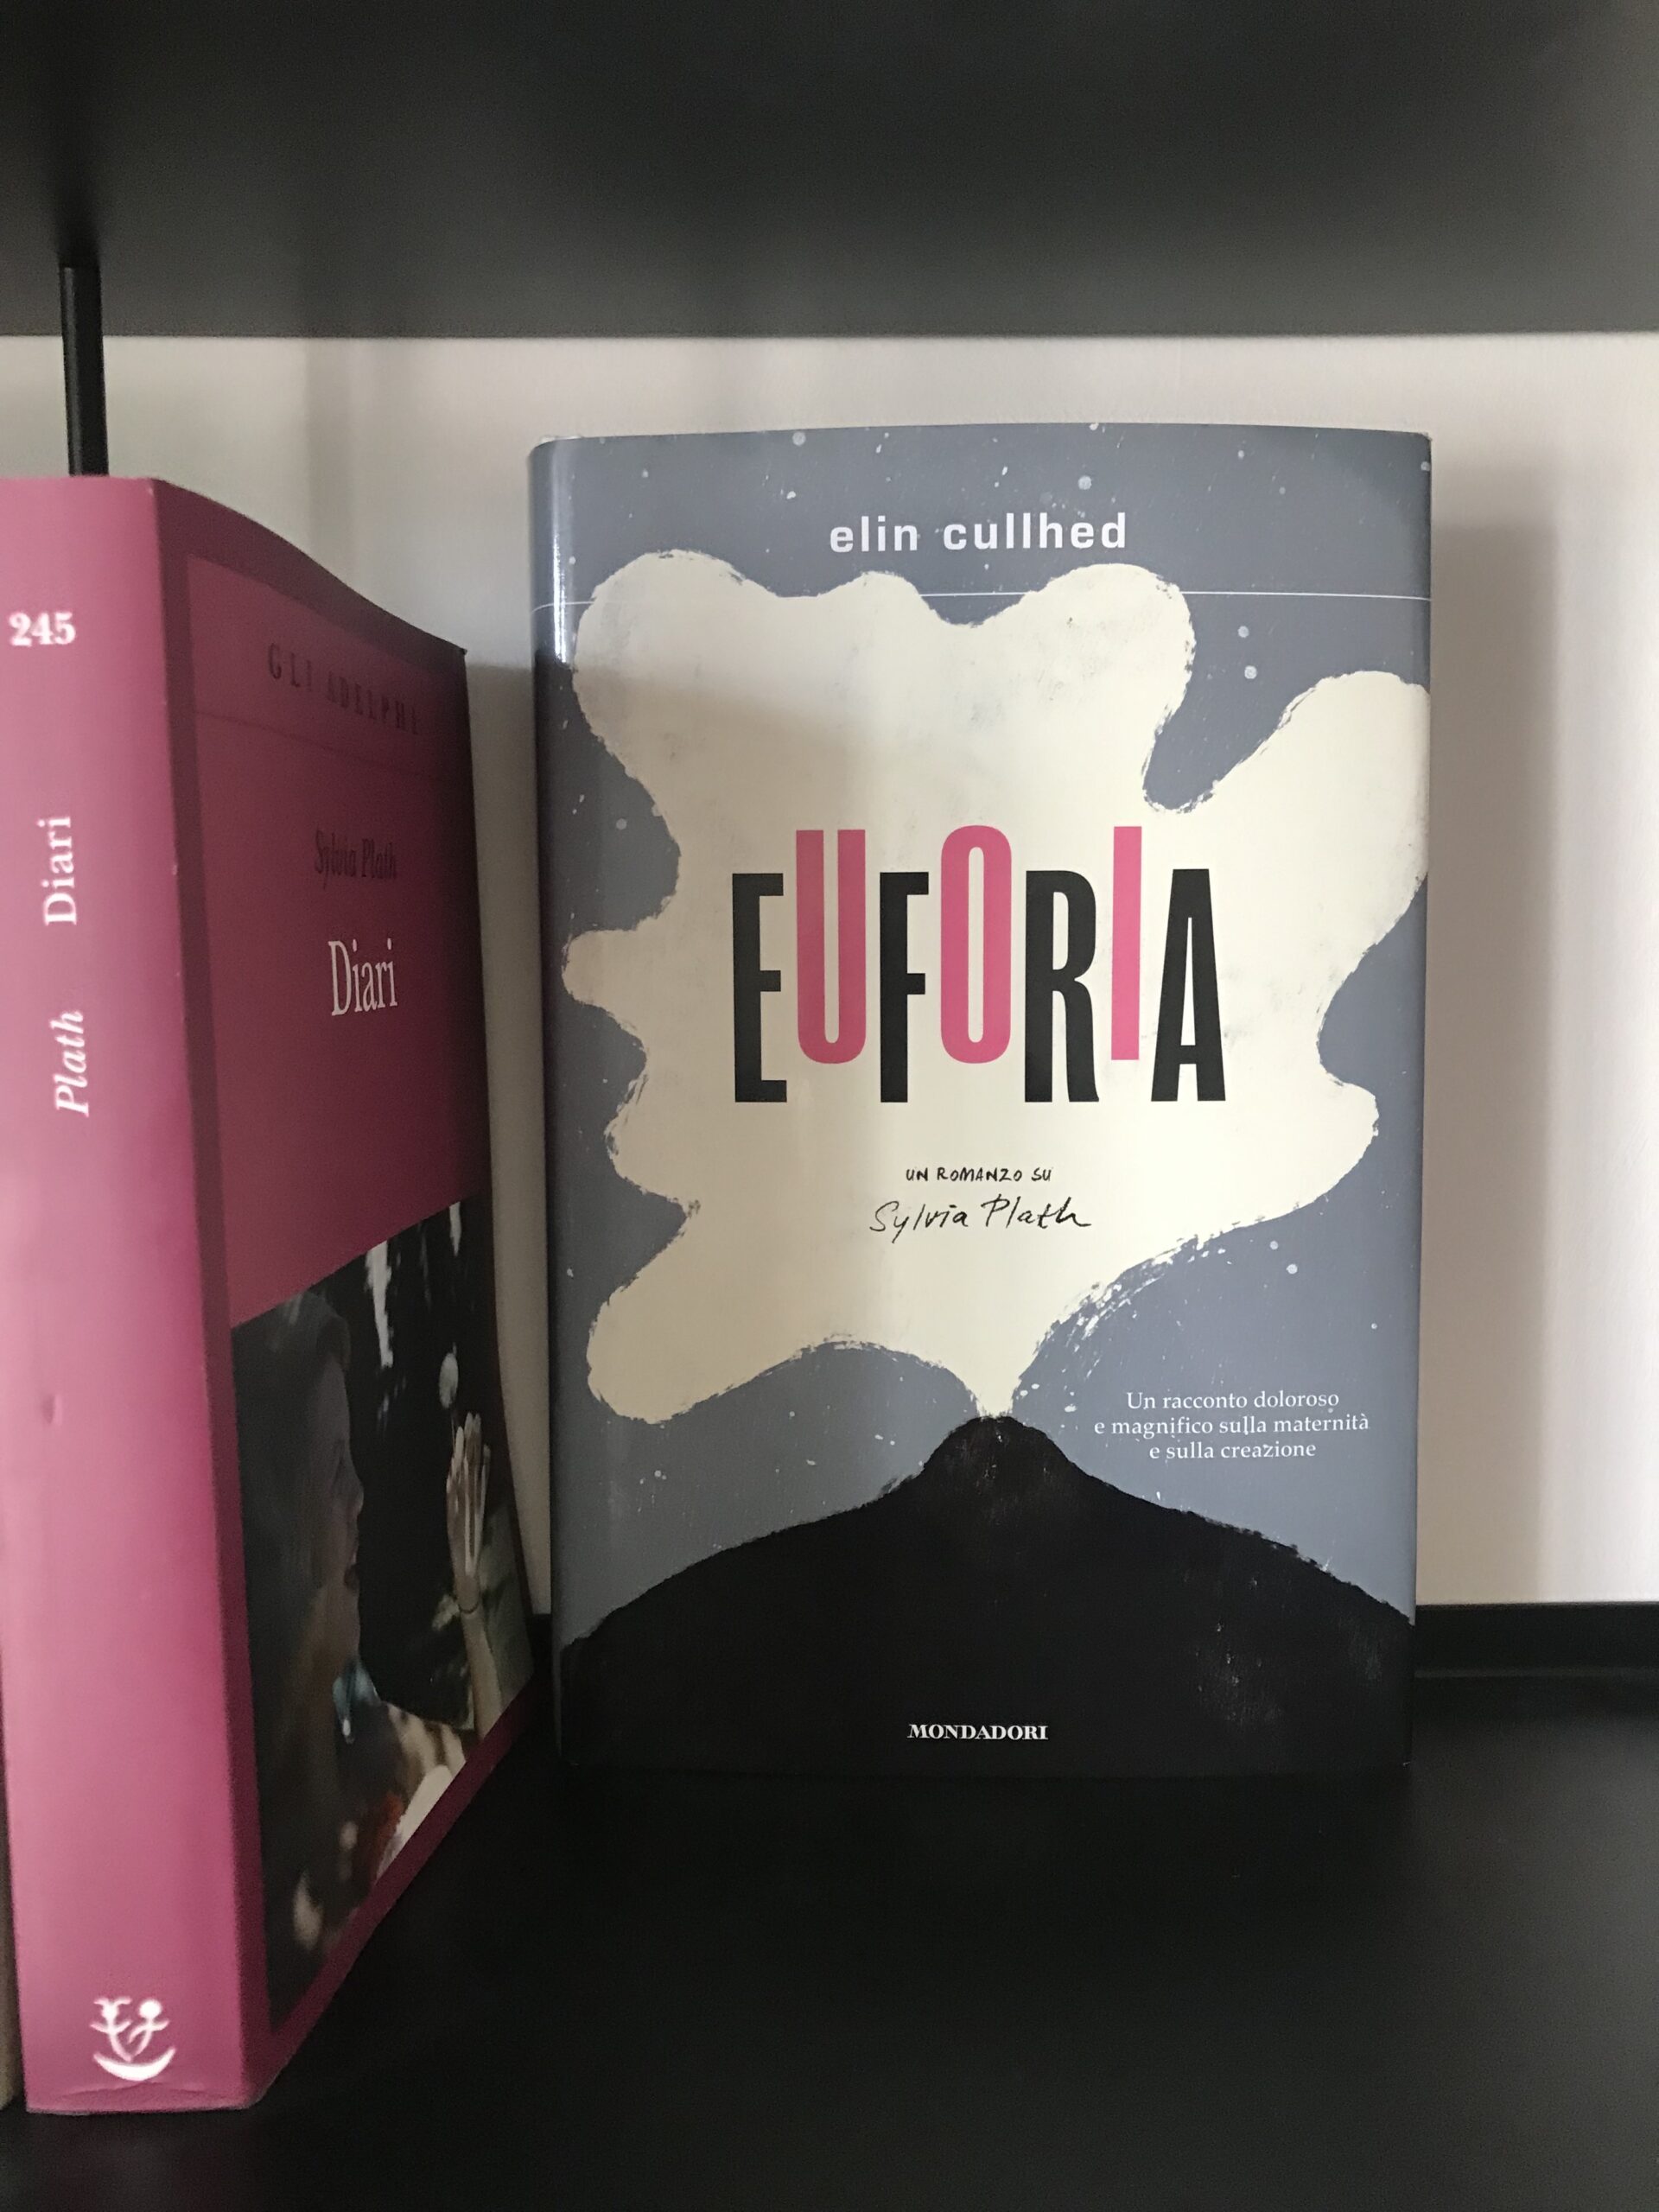 Copertina del romanzo Euforia in una libreria con a fianco i diari di Sylvia Plath.